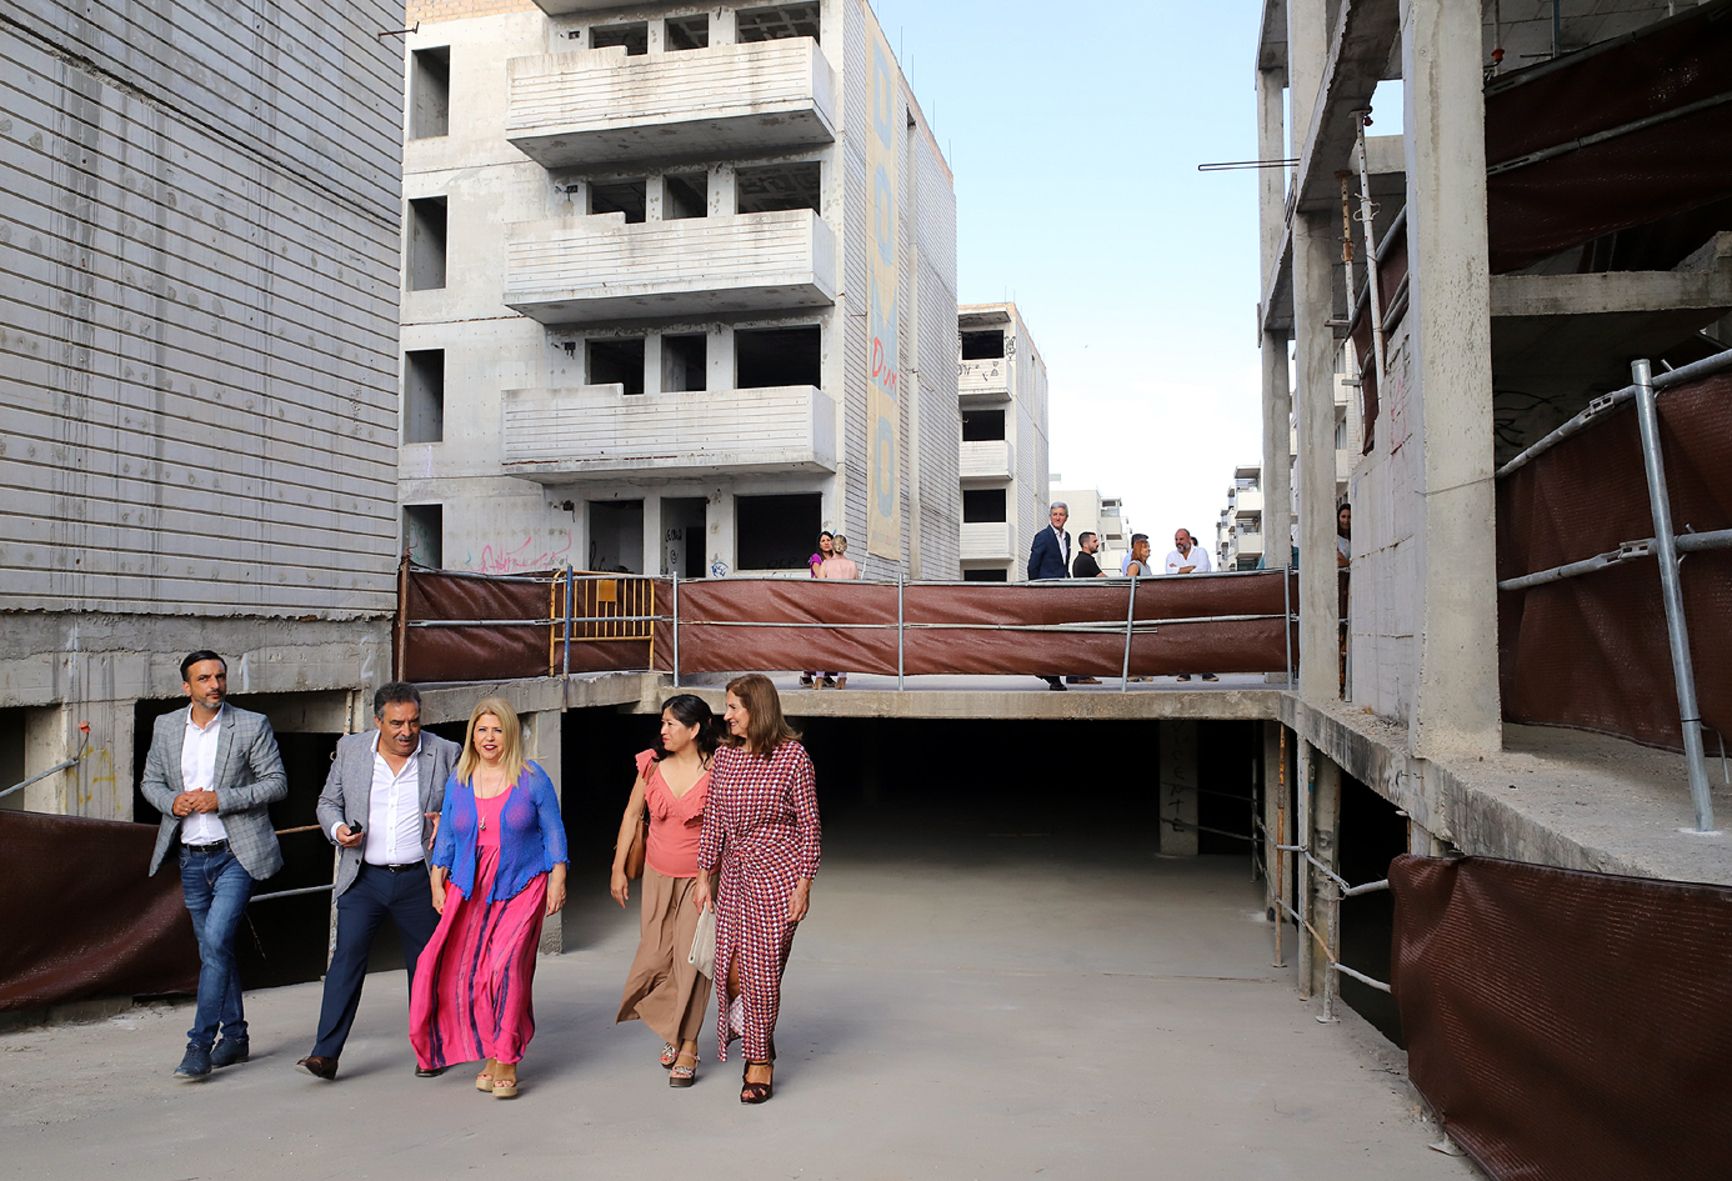 La alcaldesa de Jerez, miembros del gobierno local y representantes de Carrod, visitan la promoción abandonada que ahora se recuperará con 100 pisos.